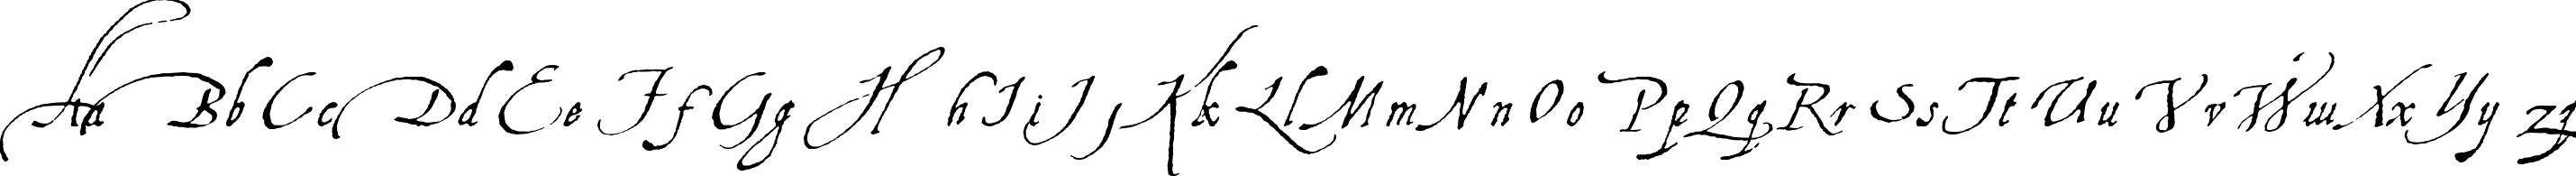 Пример написания английского алфавита шрифтом Aquiline